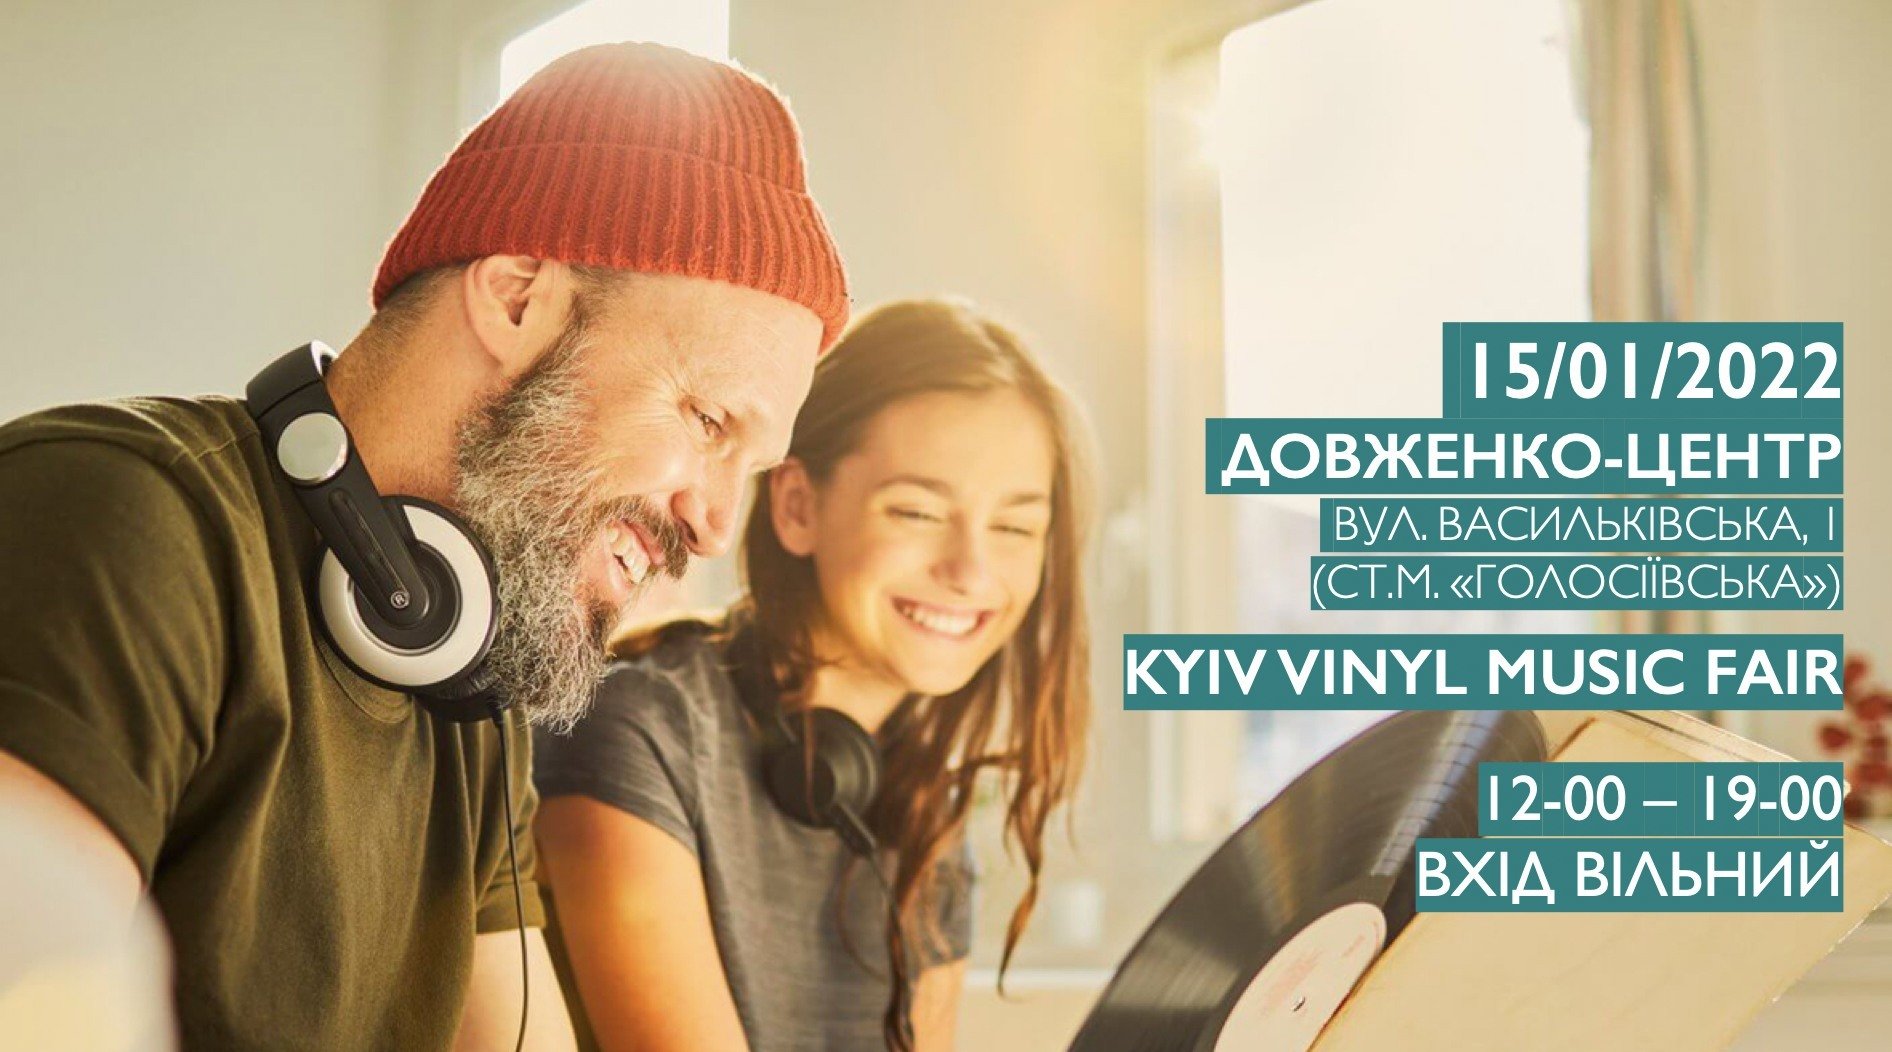 "Kyiv vinyl music fair"